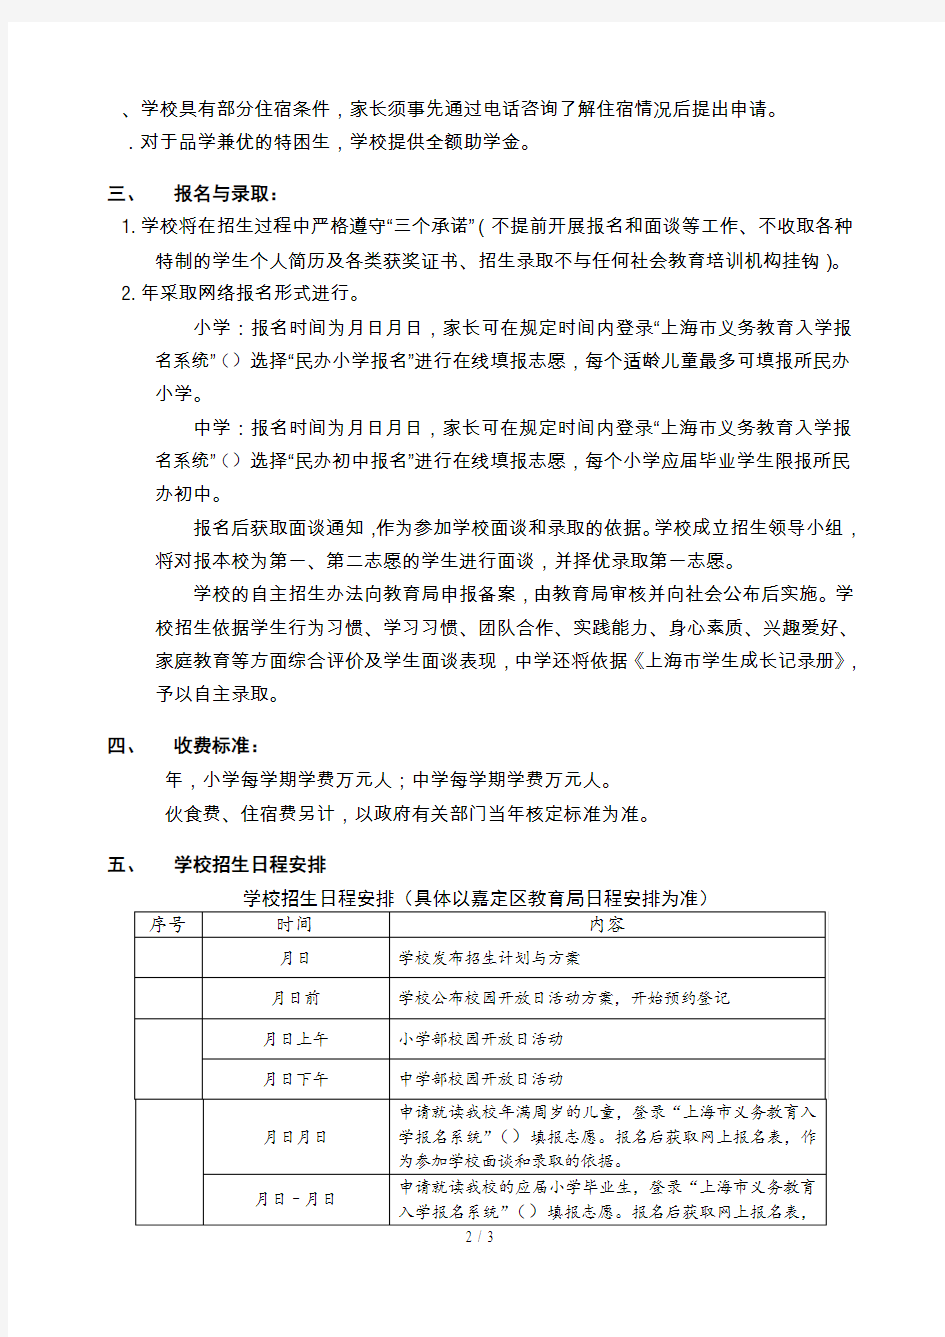 上海嘉定区世界外国语学校2019年招生简章